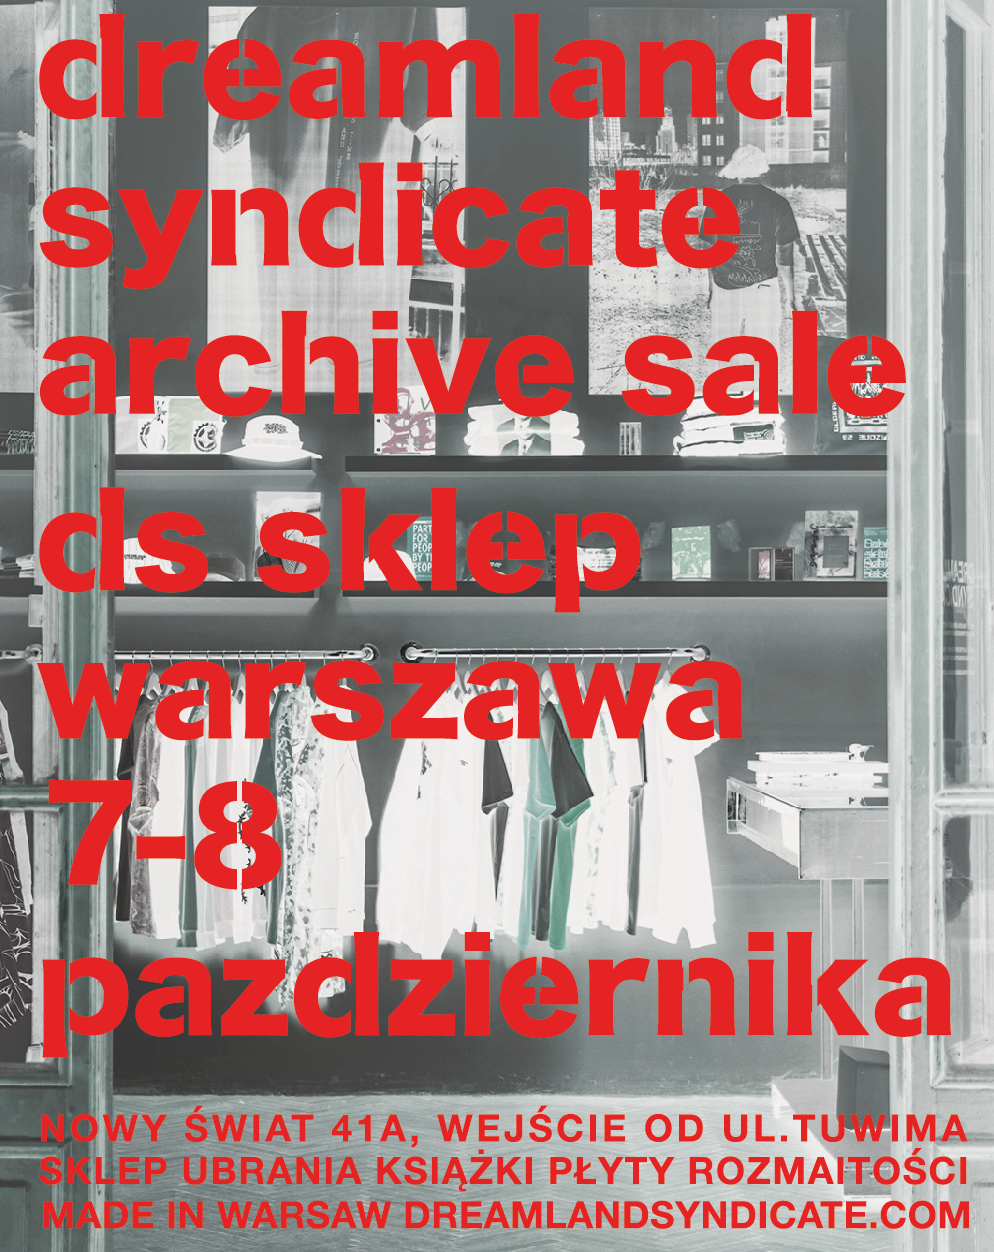 Archive sale DS sklep Warszawa